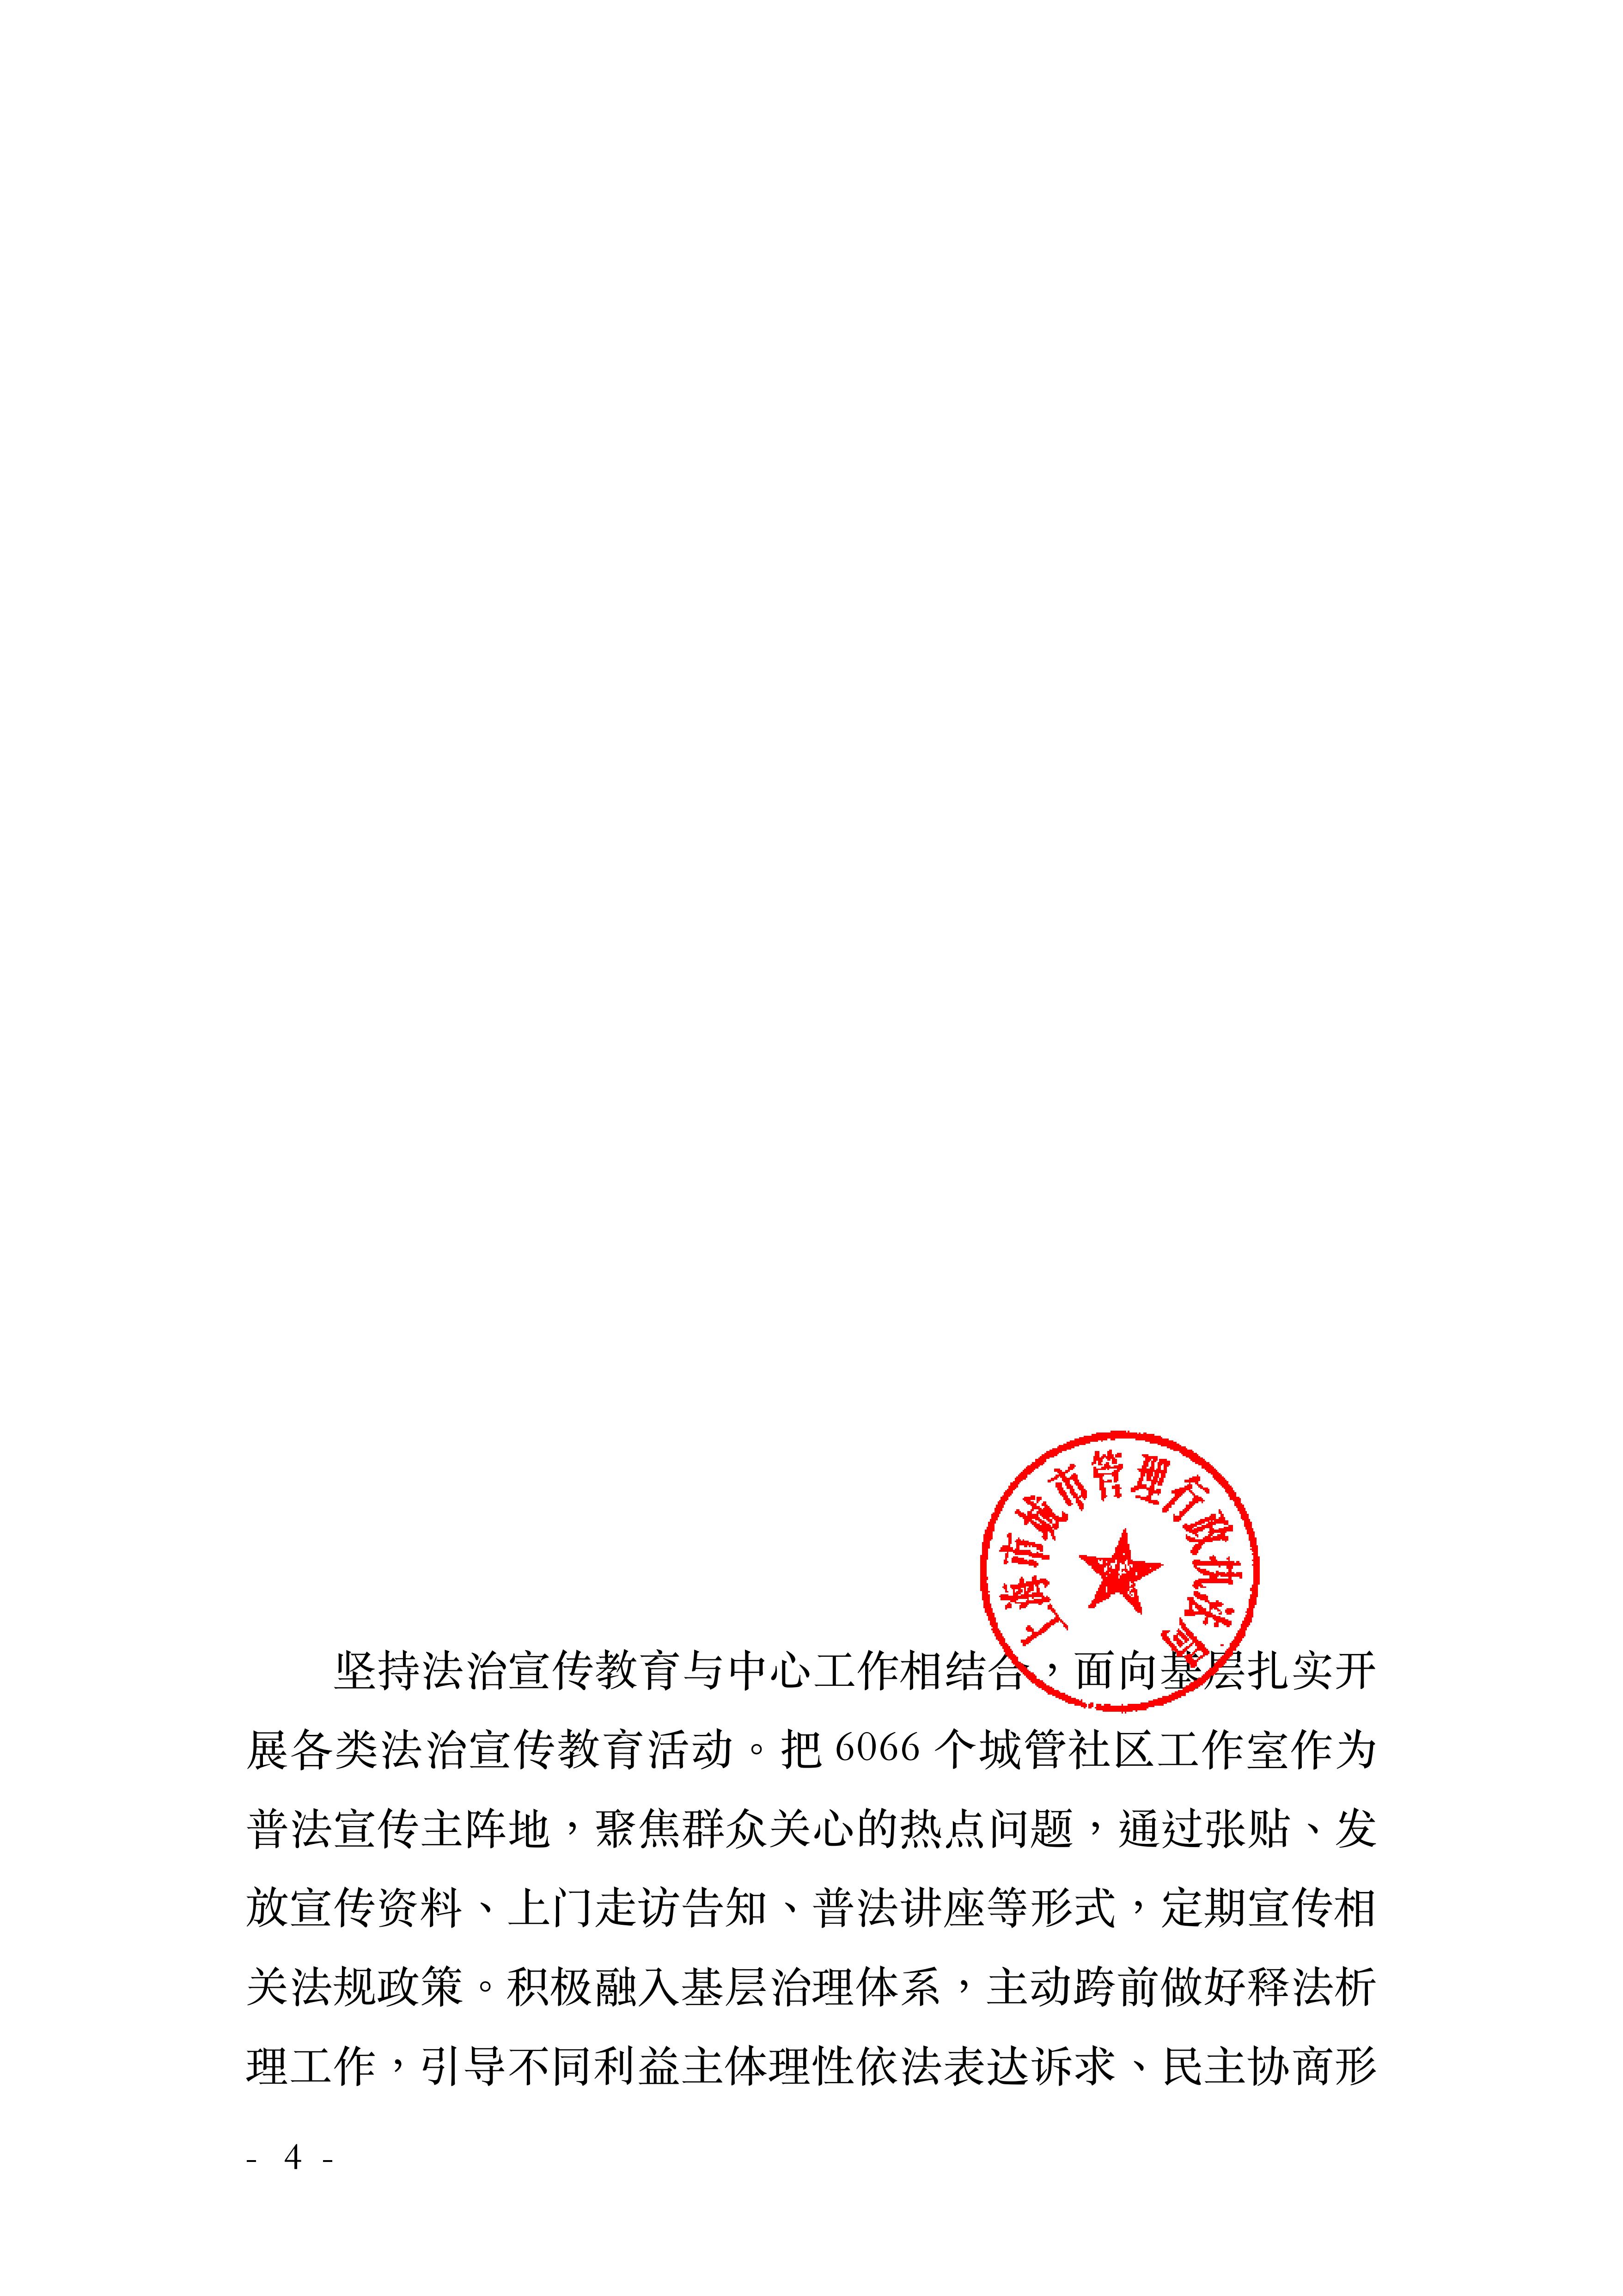 沪城管执〔2023〕24号-关于印发《上海市城管执法系统 2023年法治宣传教育工作方案》的通知_03.jpg